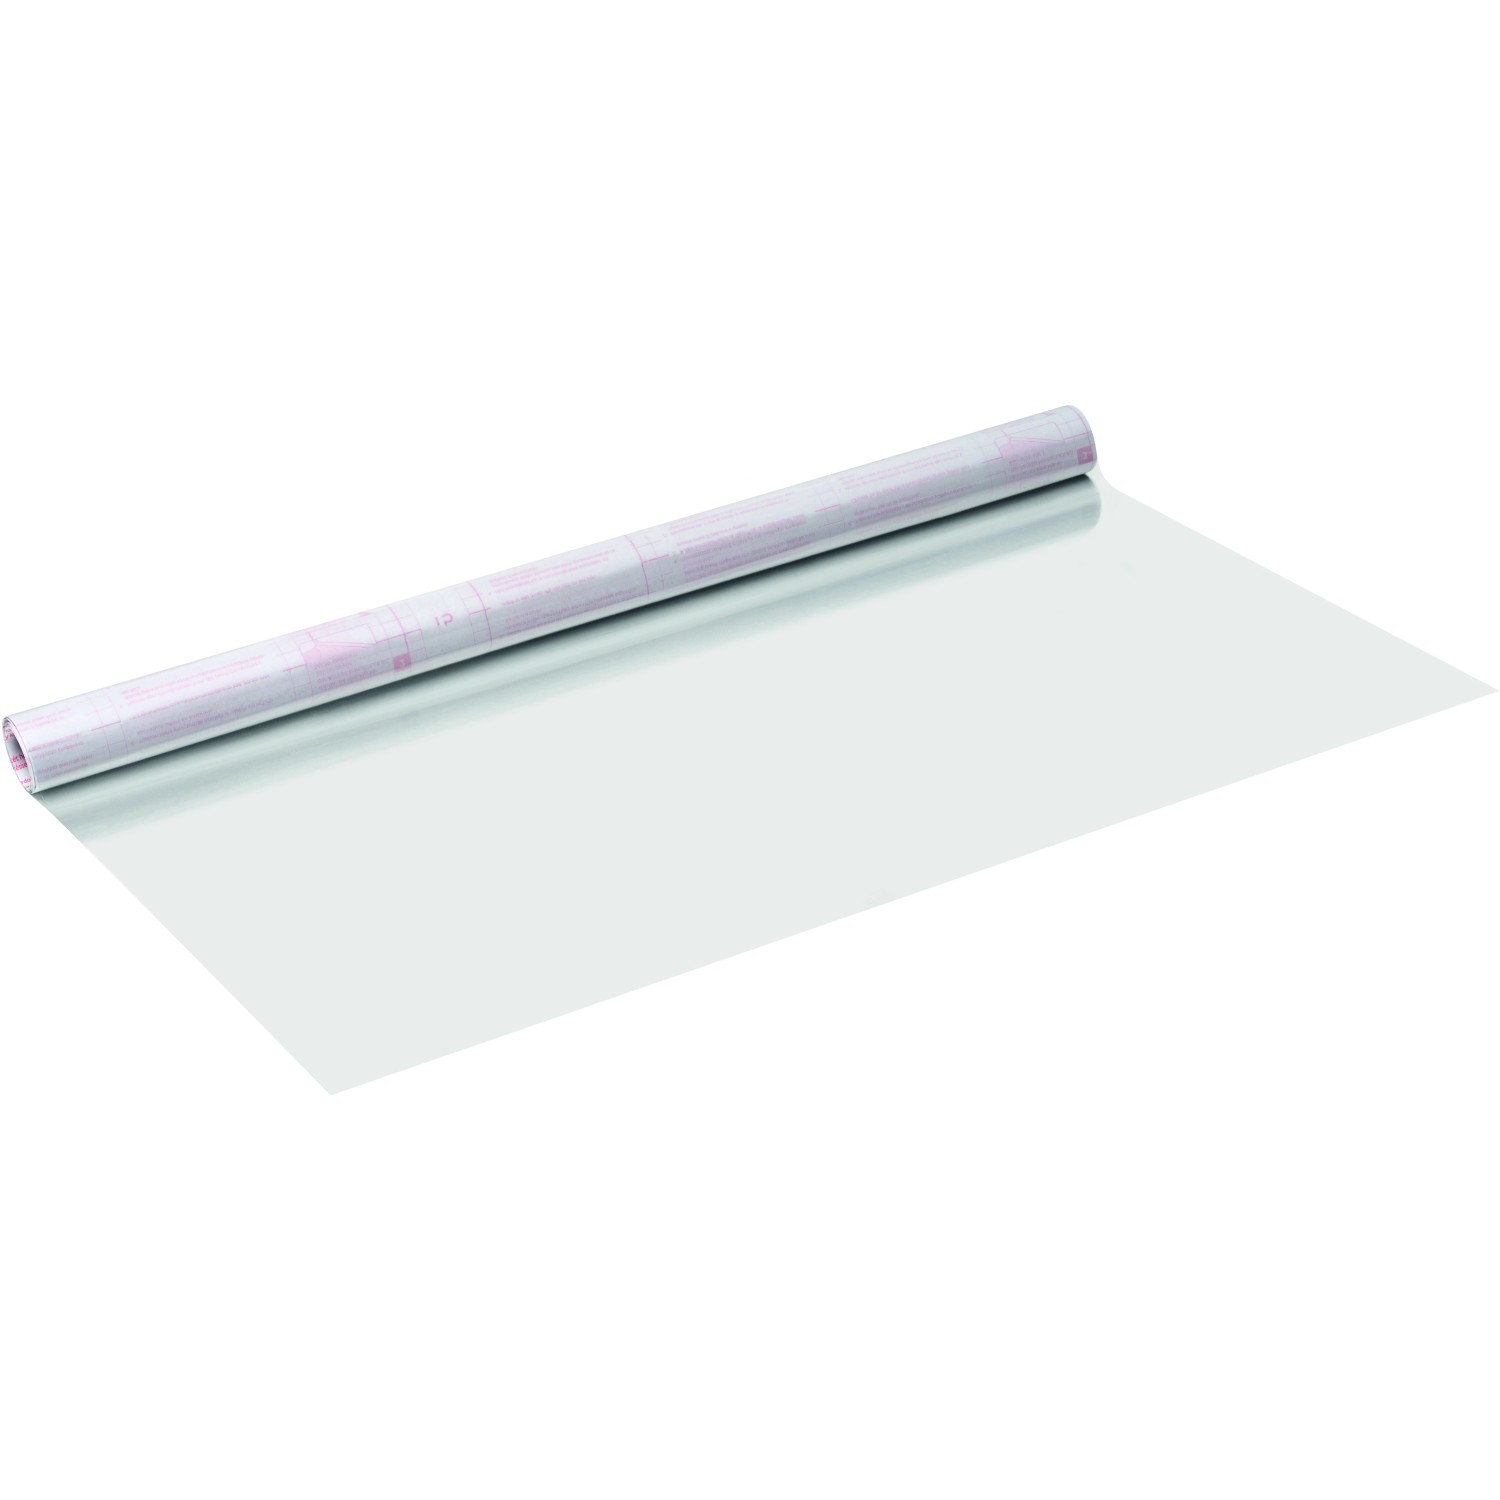 Selbstklebende transparente Folie DIMEX - blätter - 121-004 - Breite 122 cm